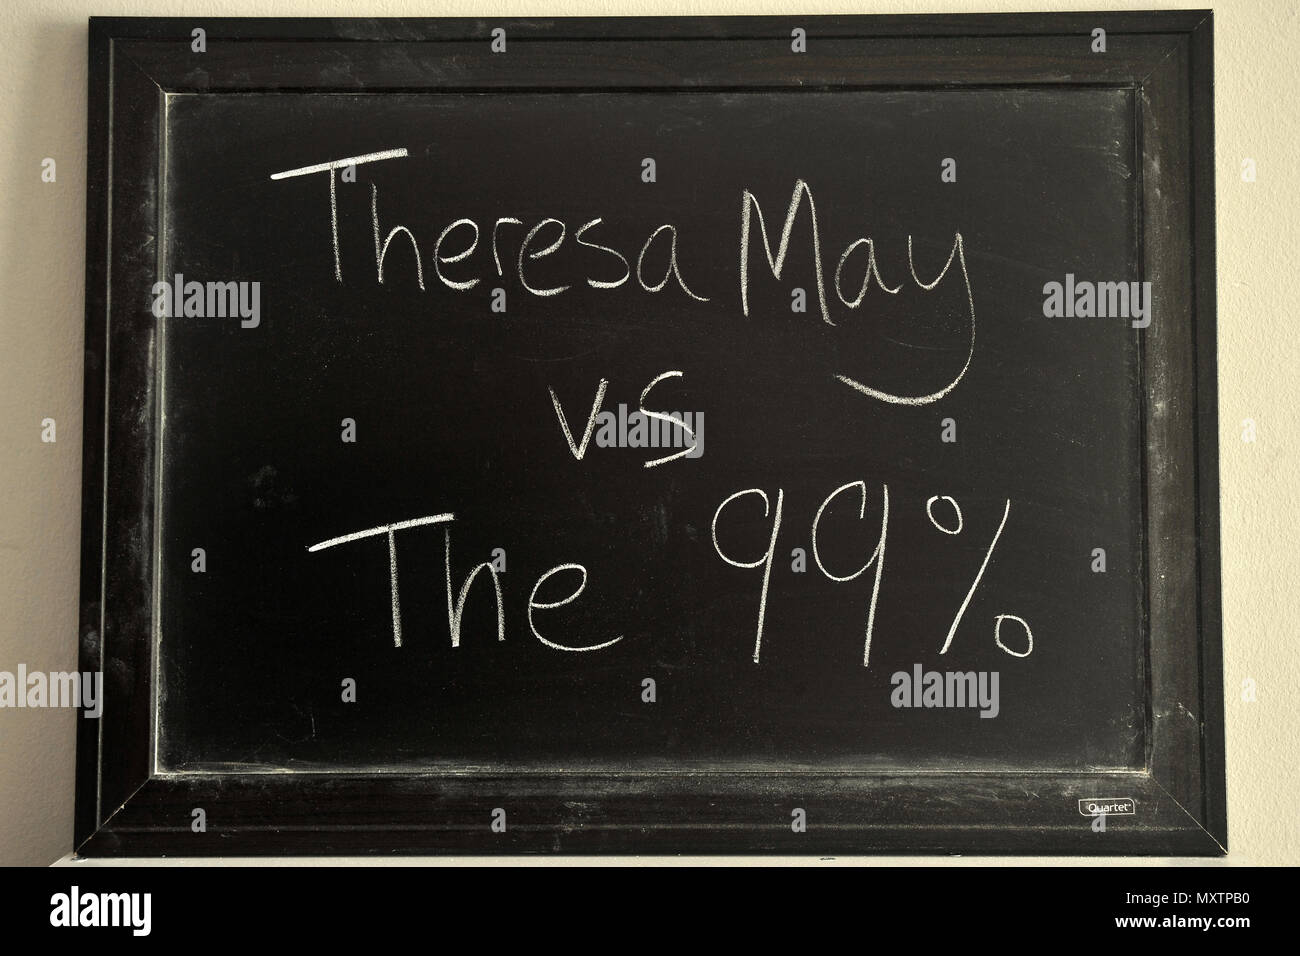 Teresa Mayo vs el 99% escritas en blanco tiza en una pizarra. Foto de stock